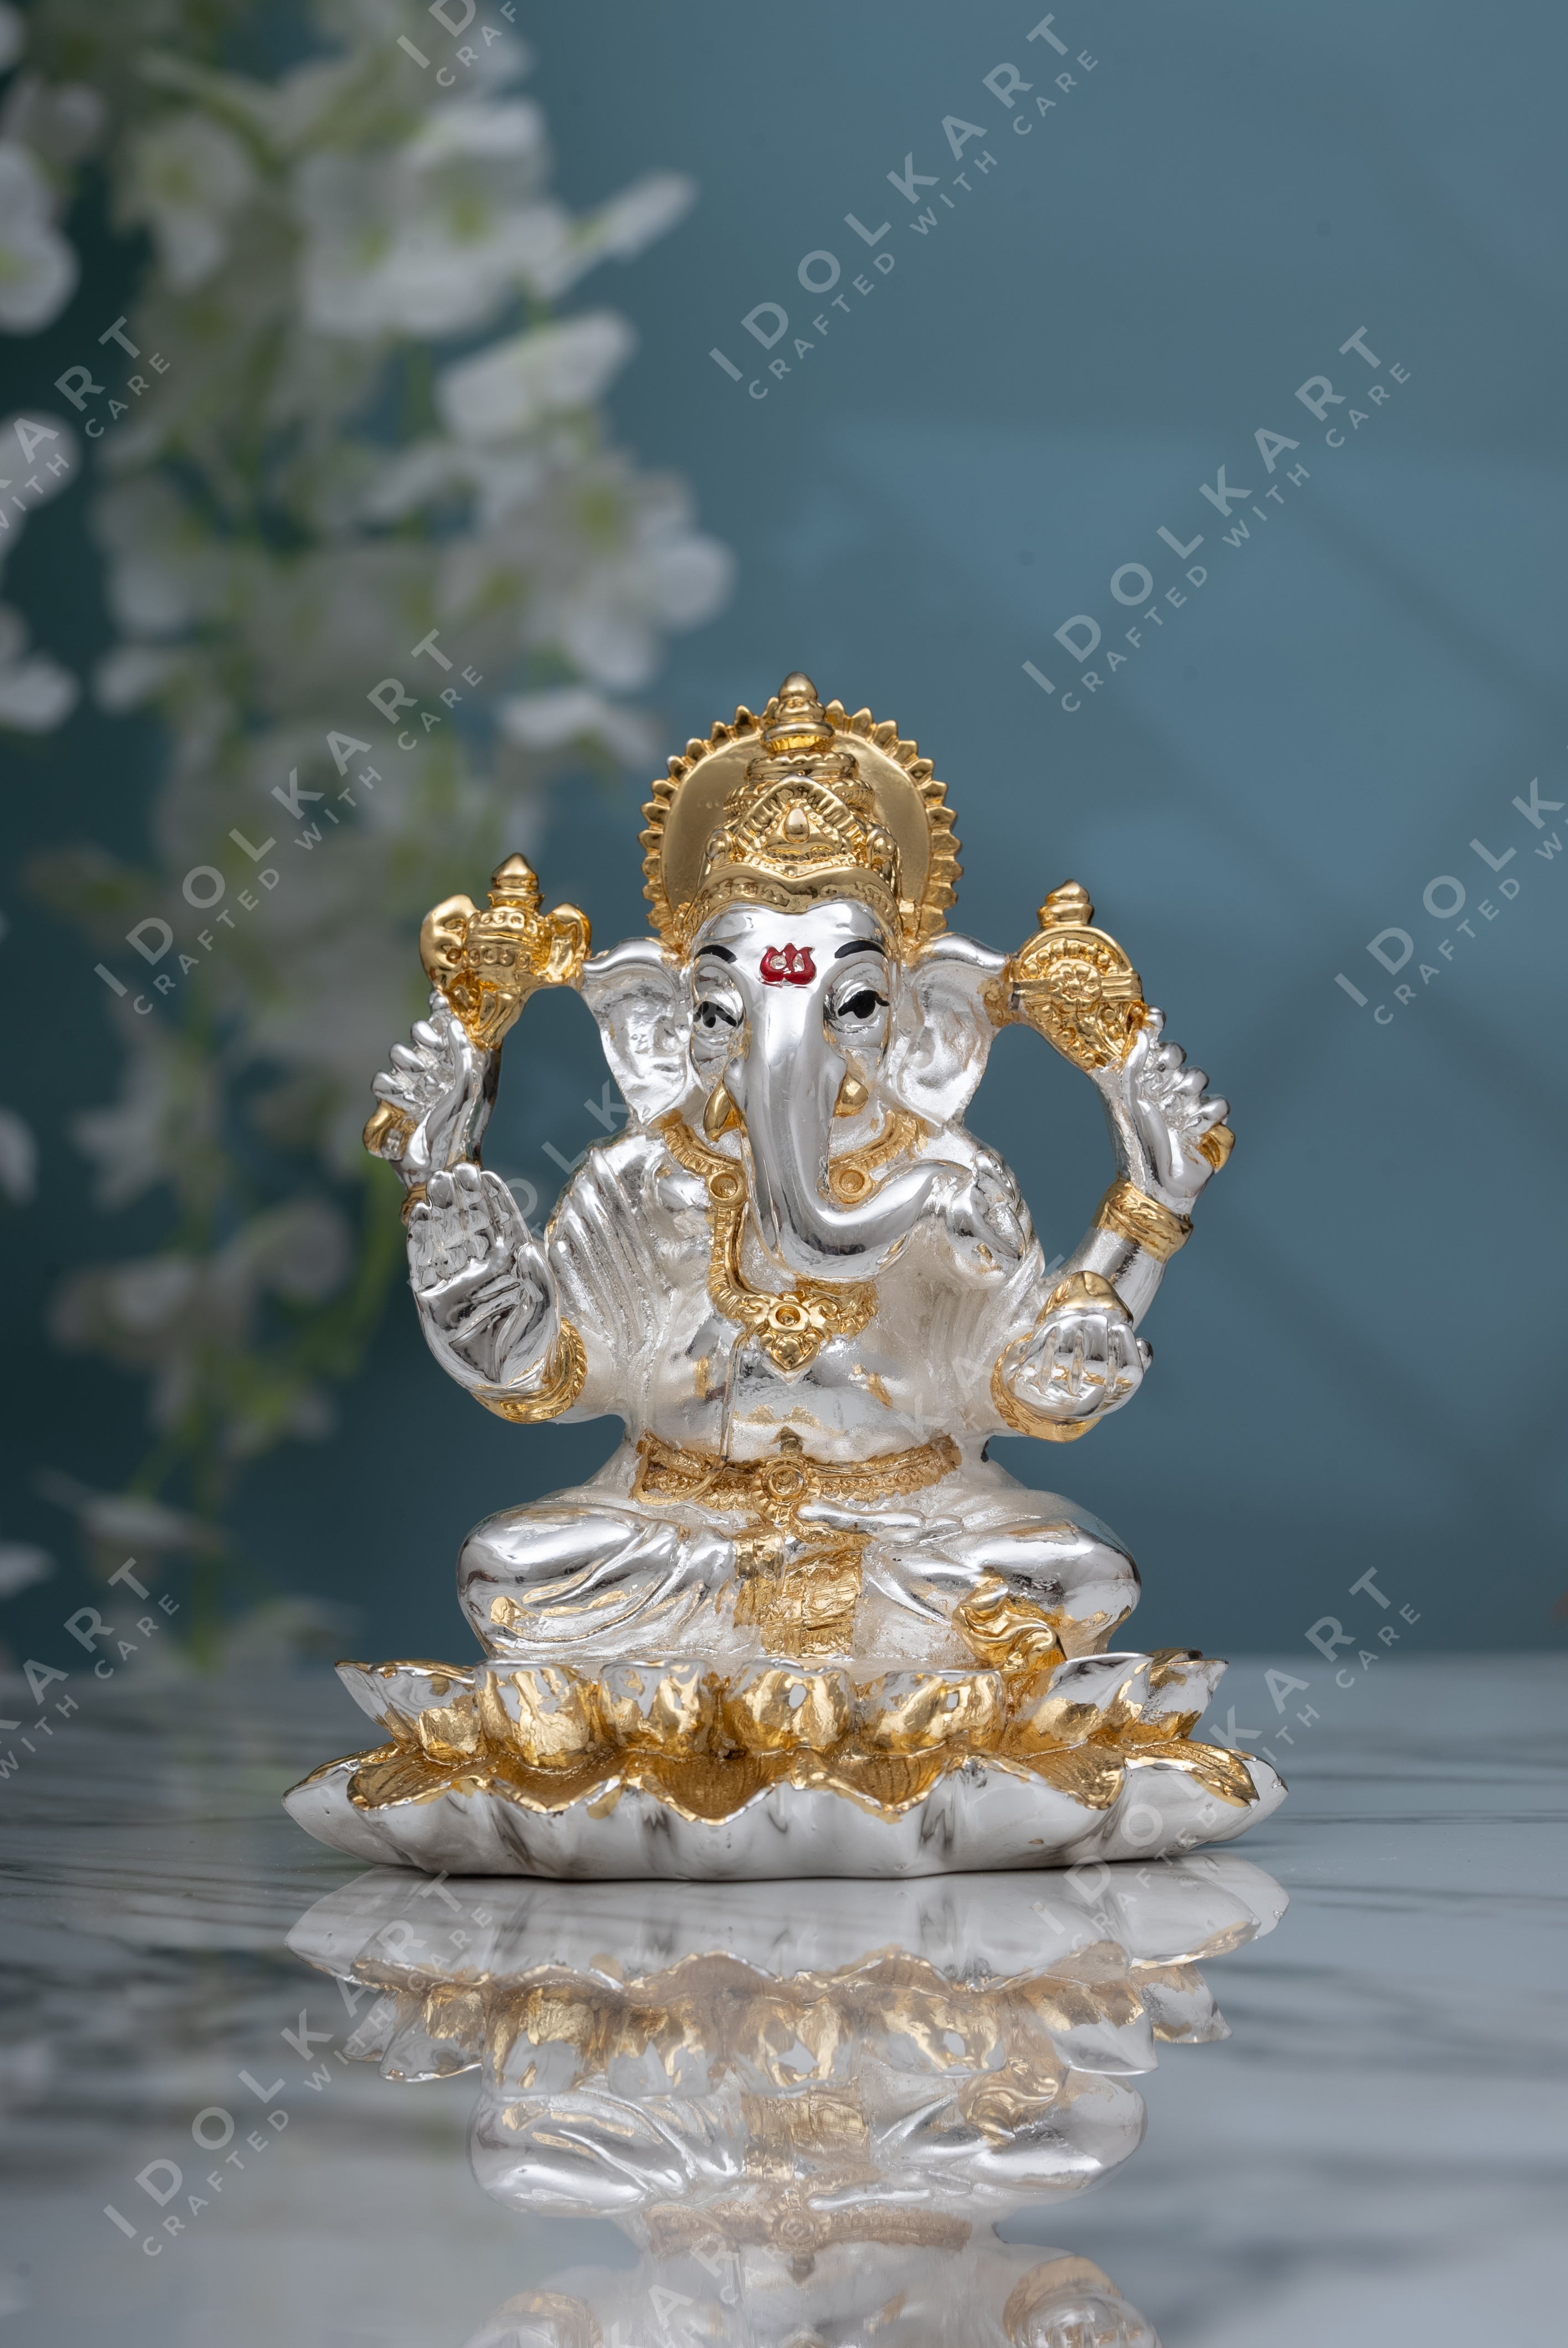 Gold & Silver Ganesha Idol on Lotus - 3 Inch